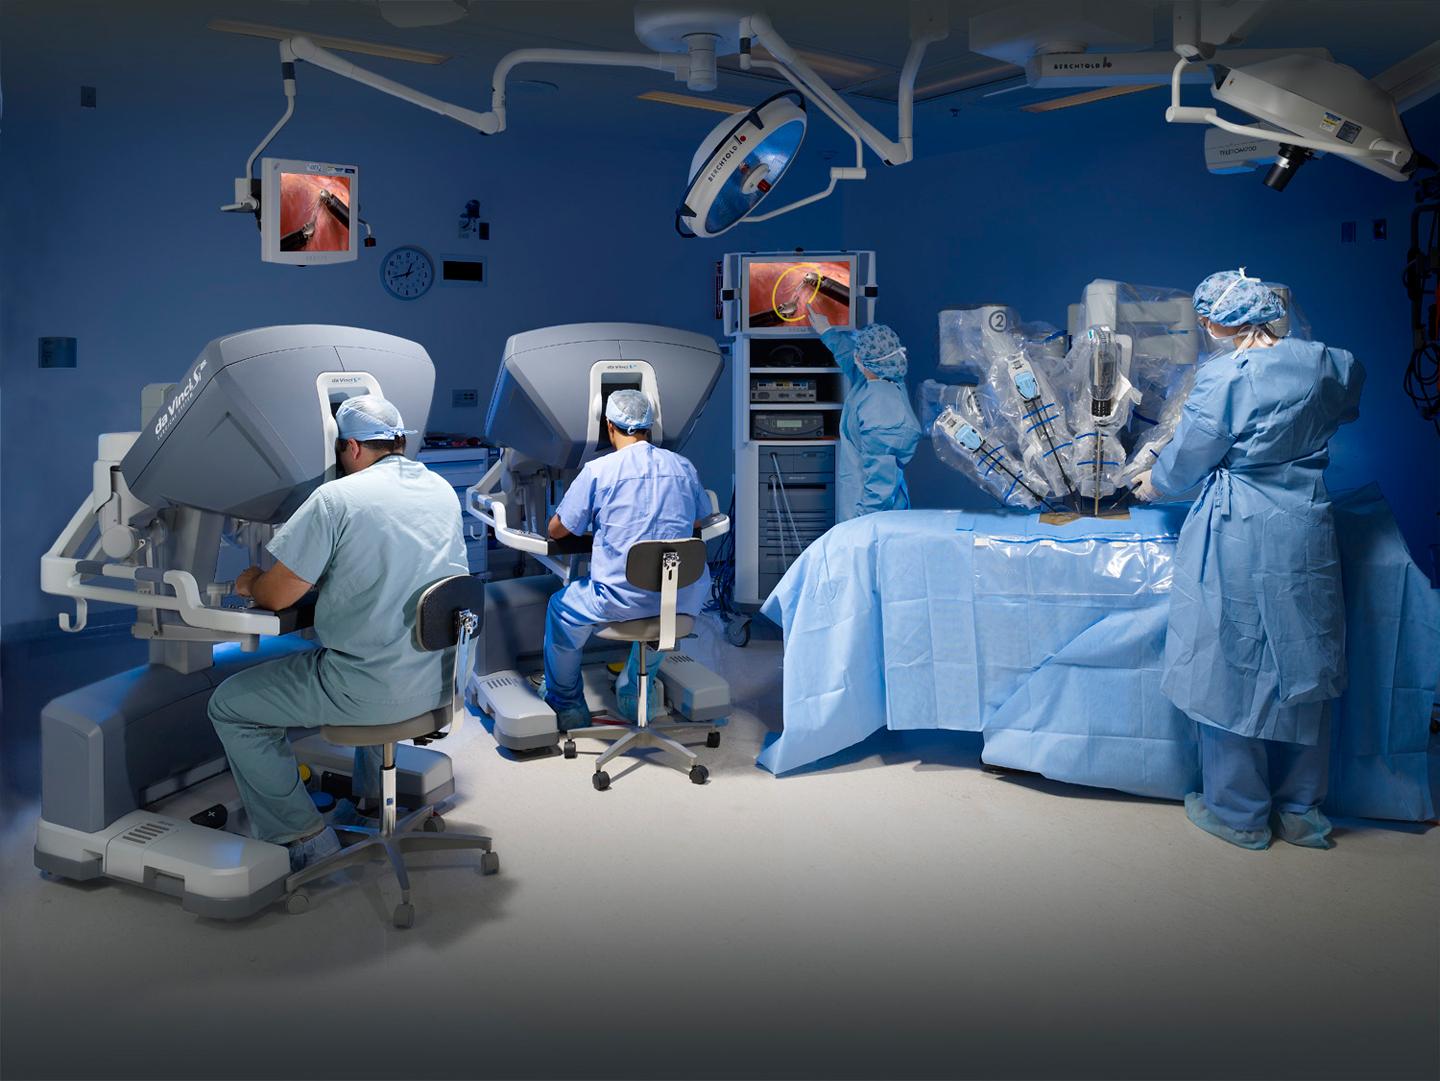 l’aquila, chirurgia addominale: eccellenti risultati con l’impiego del robot da vinci: interventi molto complessi effettuati con mini incisioni  che favoriscono rapidi recuperi e degenze brevi.